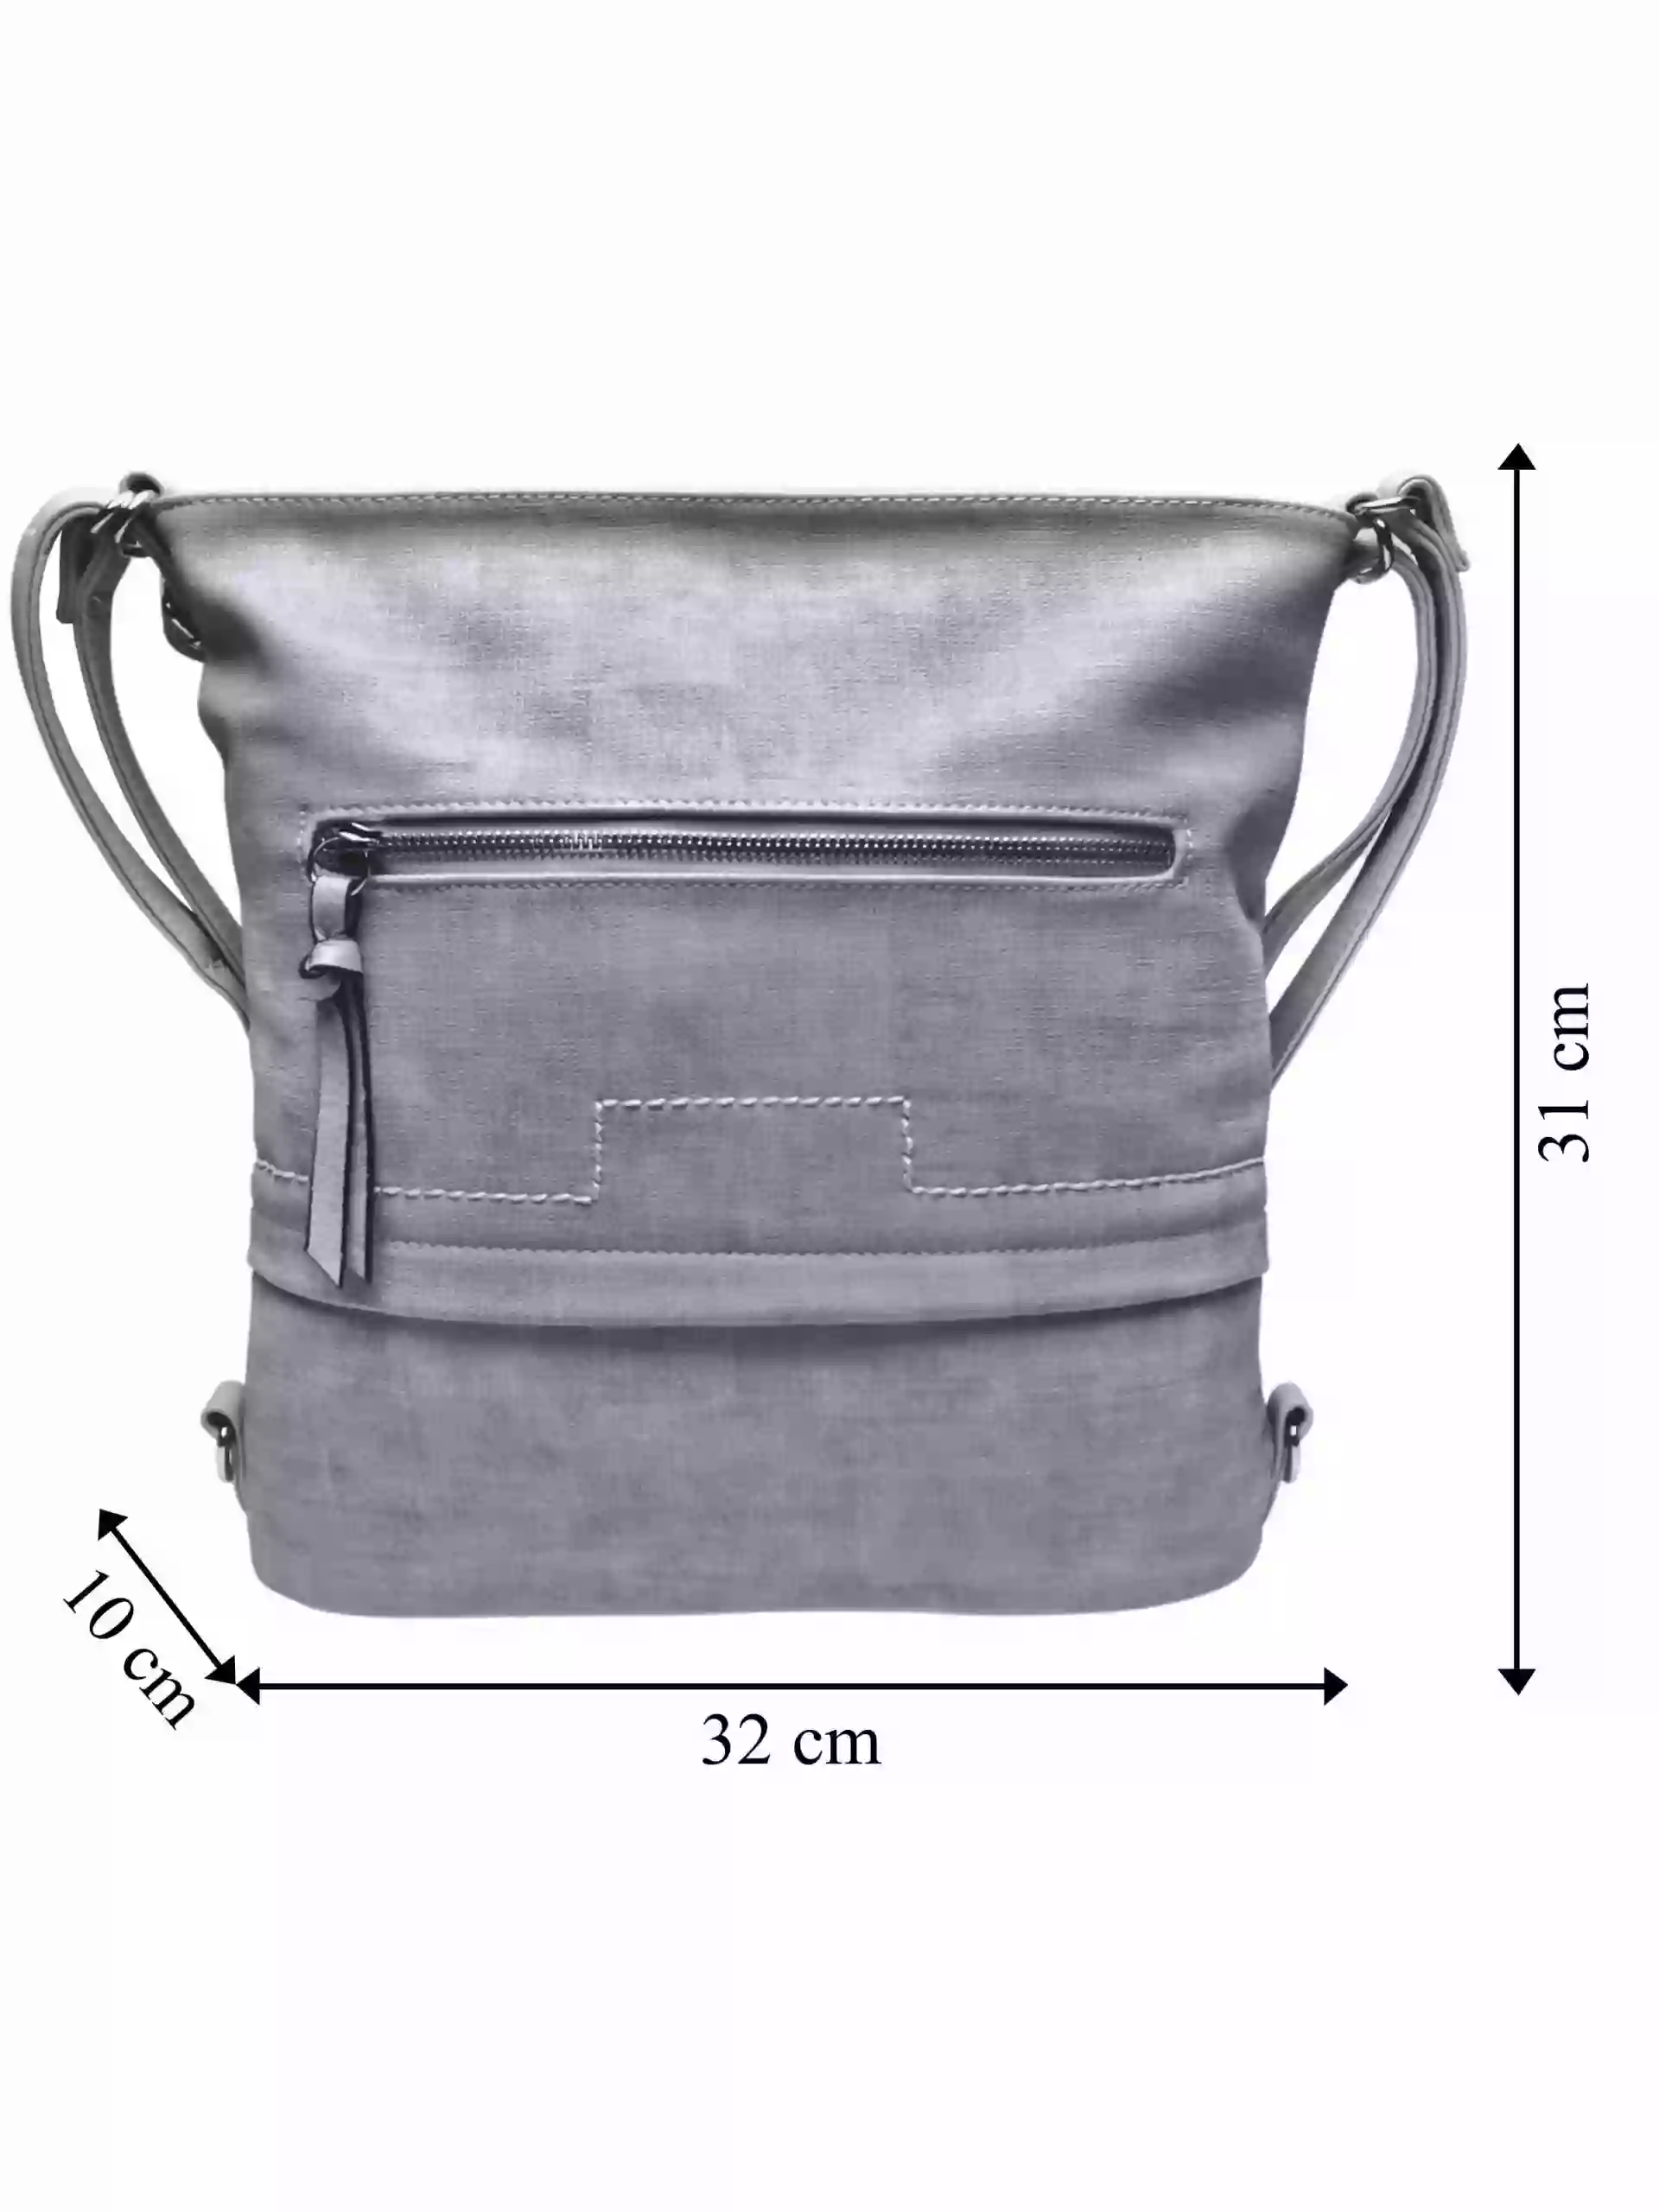 Střední světle šedý kabelko-batoh 2v1 s praktickou kapsou, Tapple, H190062, přední strana kabelko-batohu 2v1 s rozměry